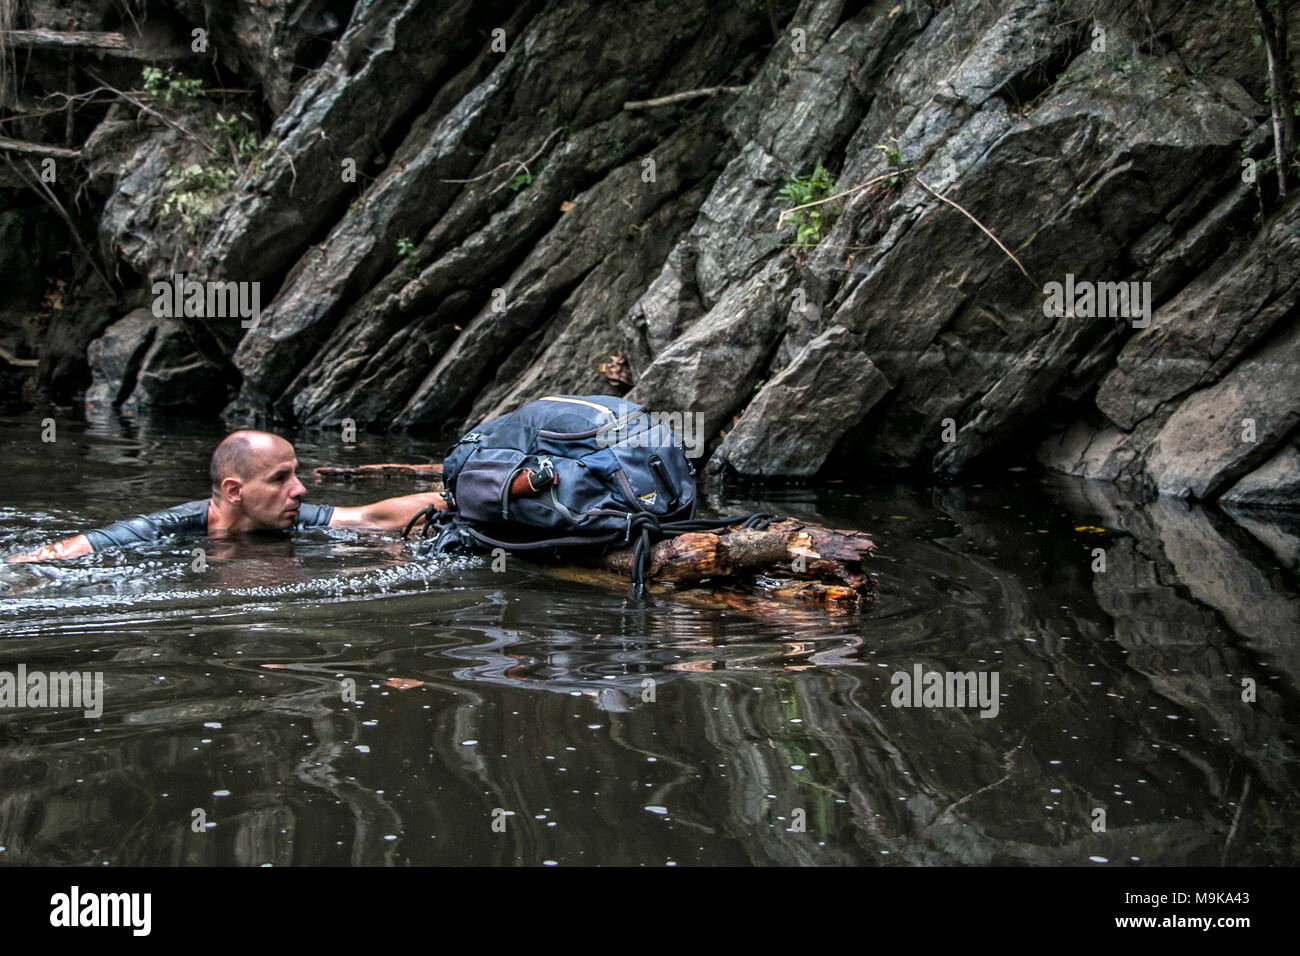 Un hombre es nadar en un río y apoyar una balsa improvisada hecha a mano con su mochila. Concepto de la supervivencia y la exploración en el desierto Foto de stock